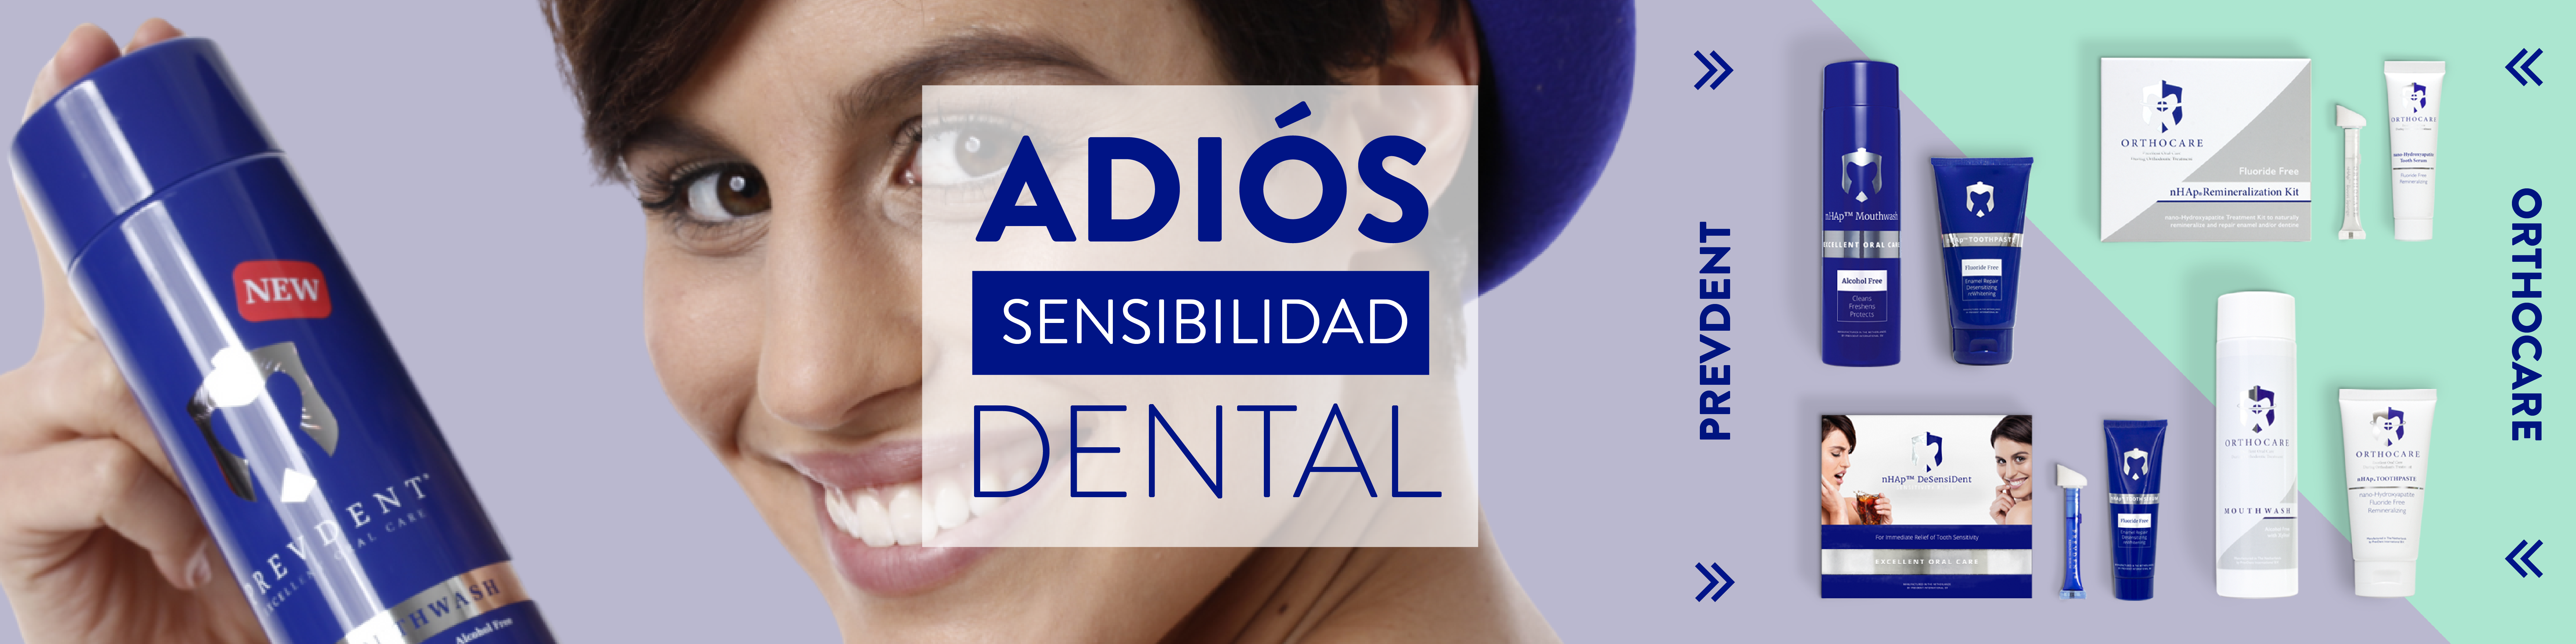 Orthocare: Adiós sensibilidad dental